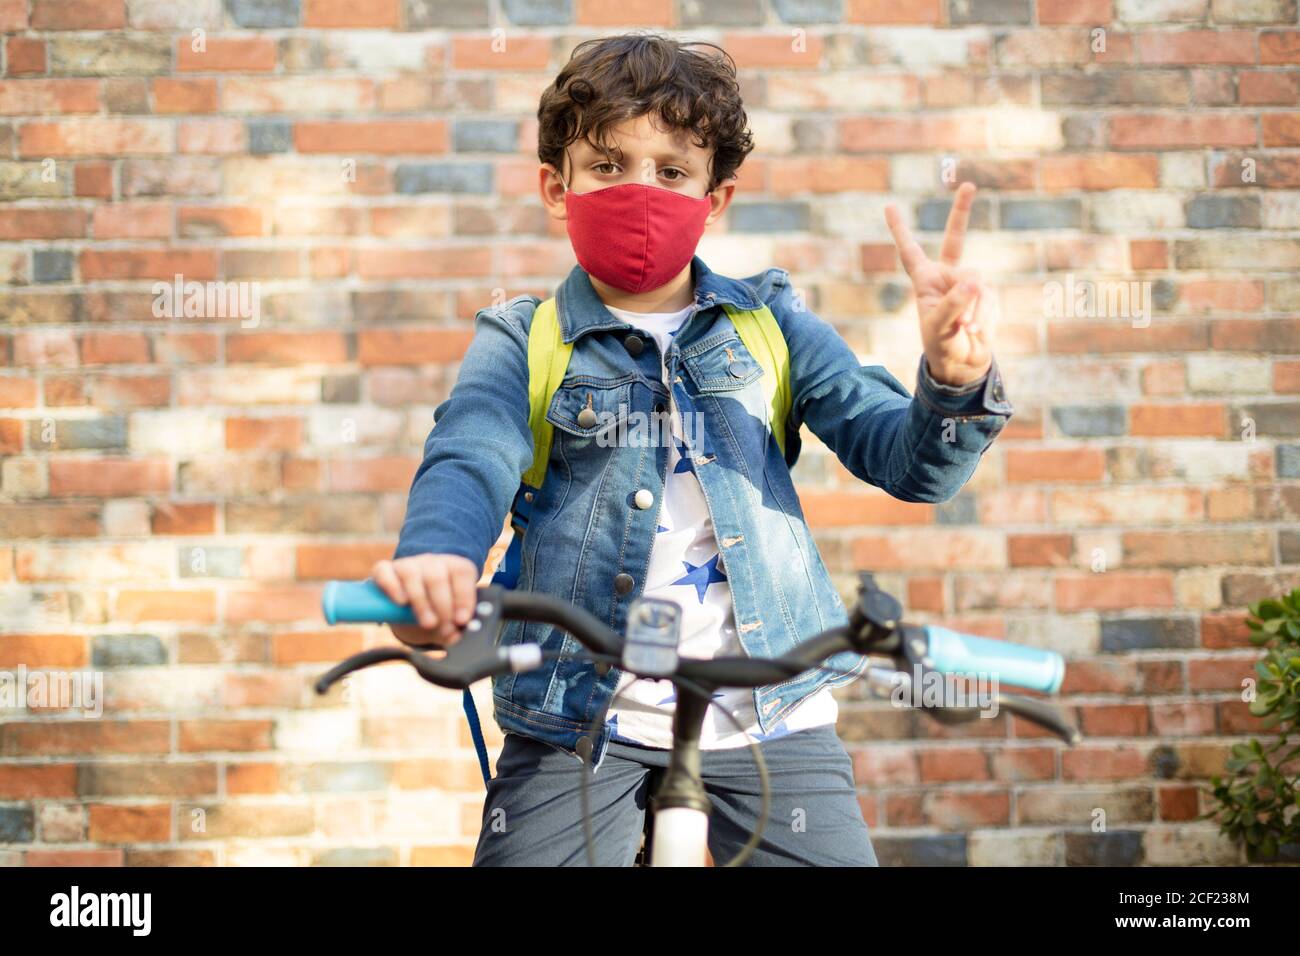 Un garçon caucasien sur son vélo prêt à aller à l'école. Il porte un masque. Concept de retour à l'école et nouvelle norme. Banque D'Images